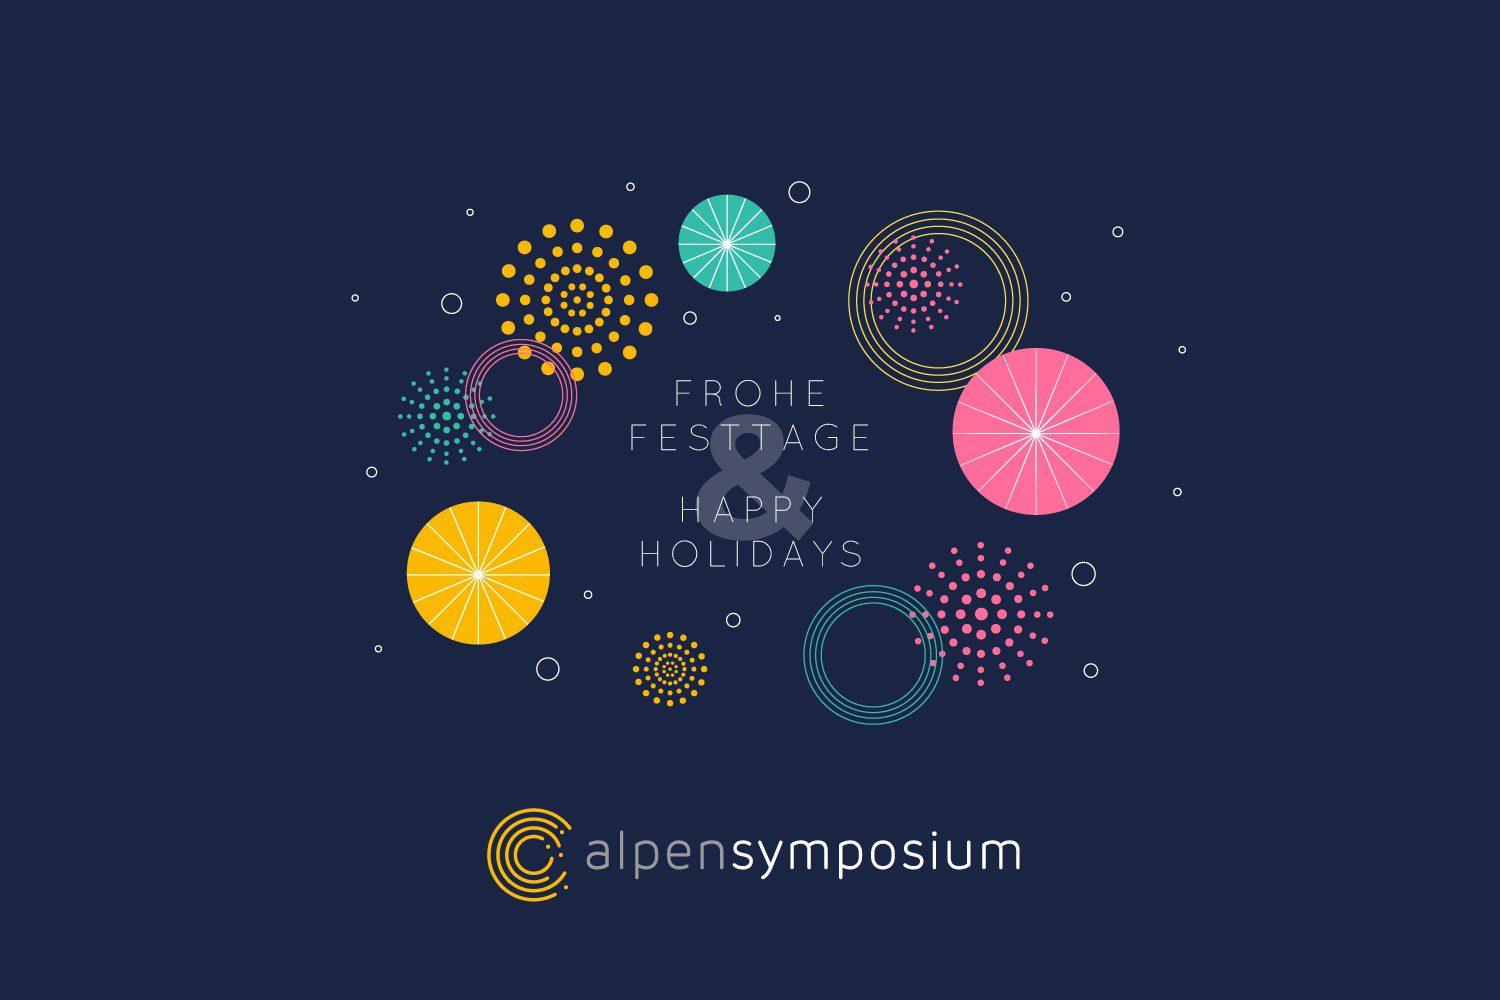 Alpensymposium Konferenz für Politik, Wirtschaft, Sport und Kunst, Interlaken, Schweiz